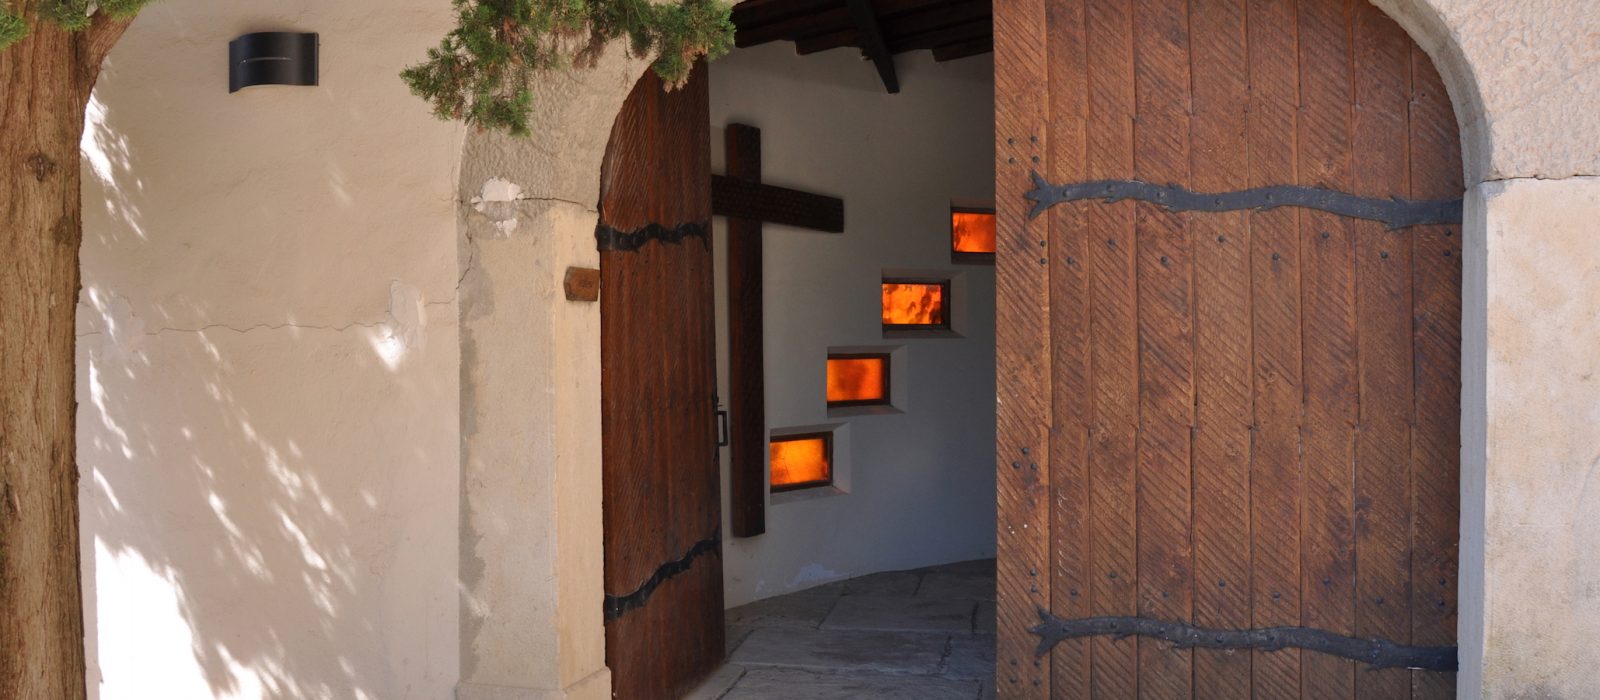 porte ouverte du monastère de Taulignan